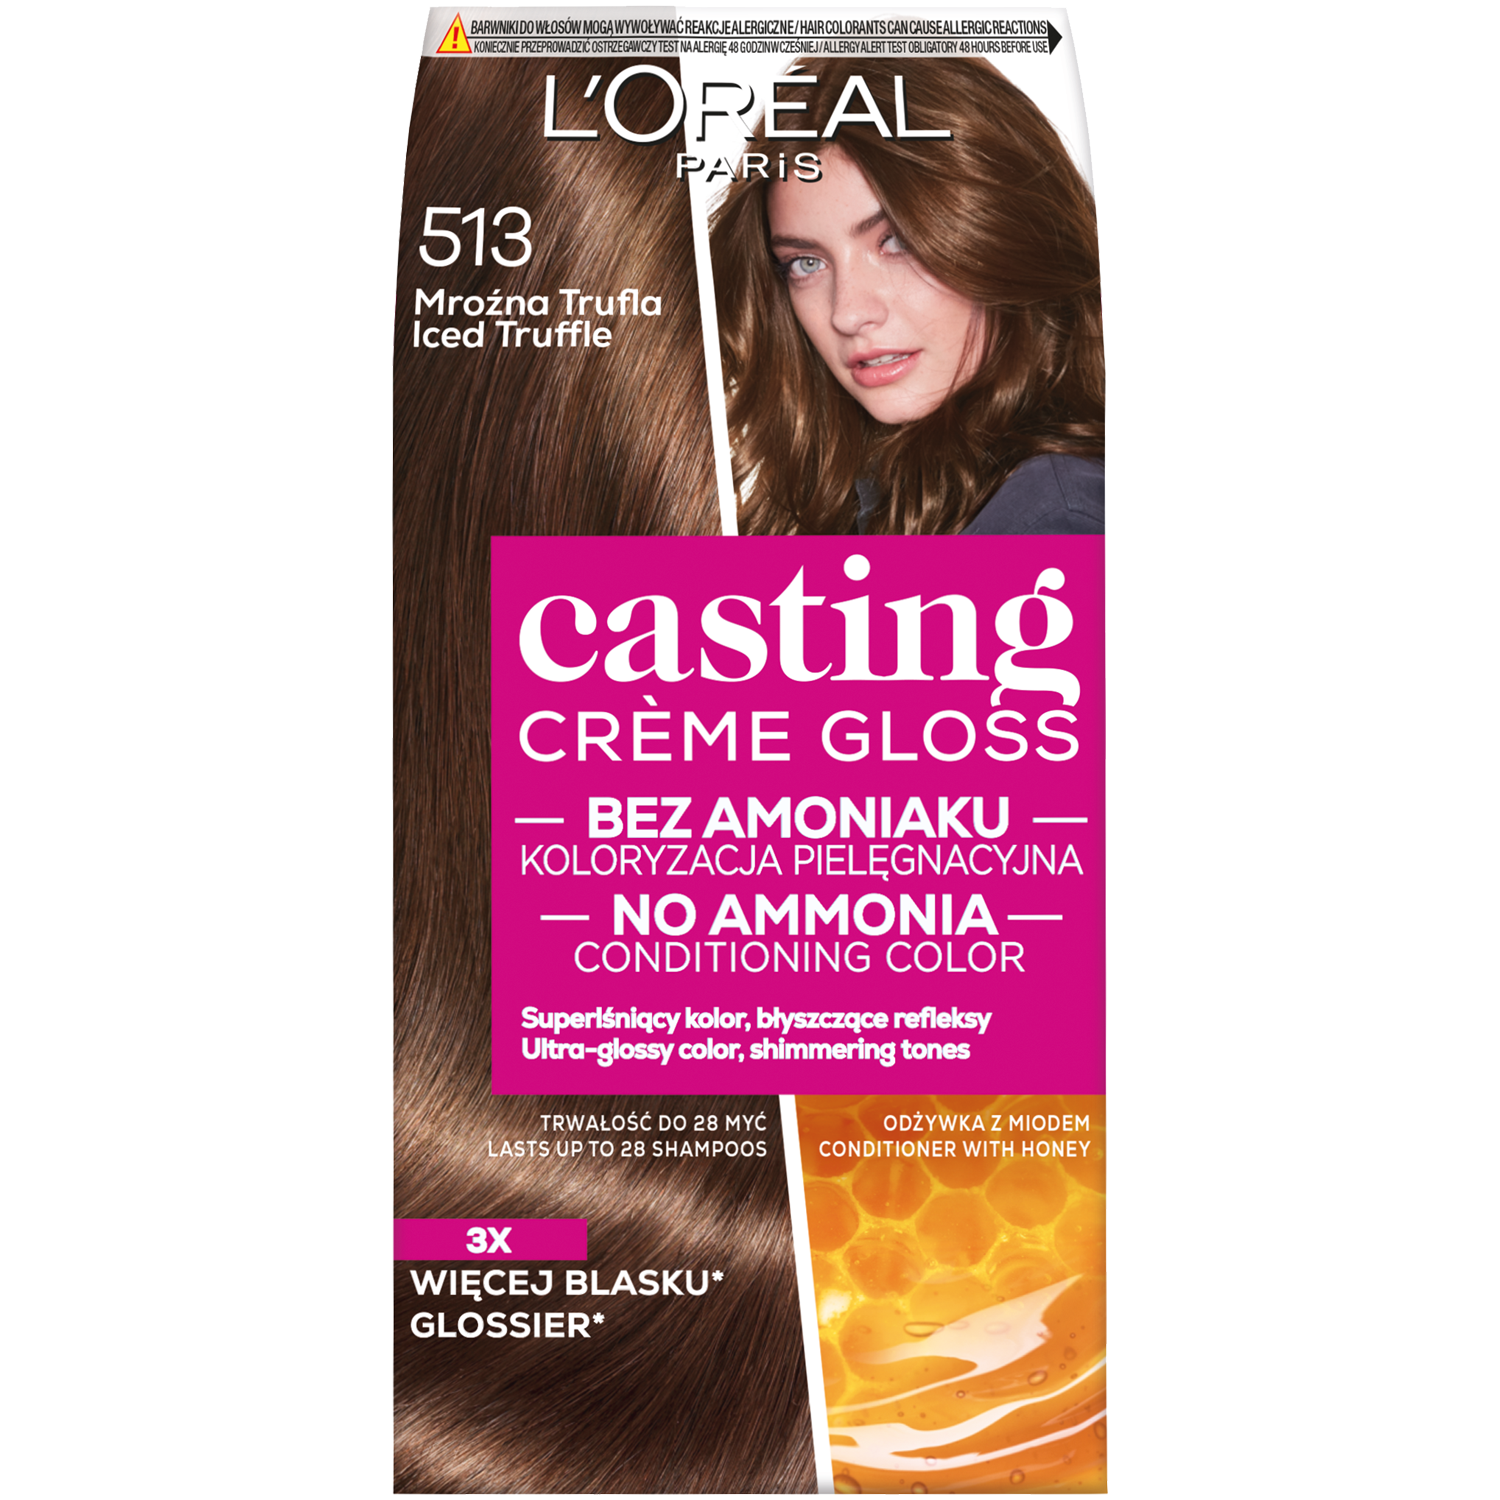 L'Oréal Paris Casting Creme Gloss краска для волос, 1 упаковка краска для волос 553 пряный темно каштановый l oréal paris casting natural gloss 1 упаковка